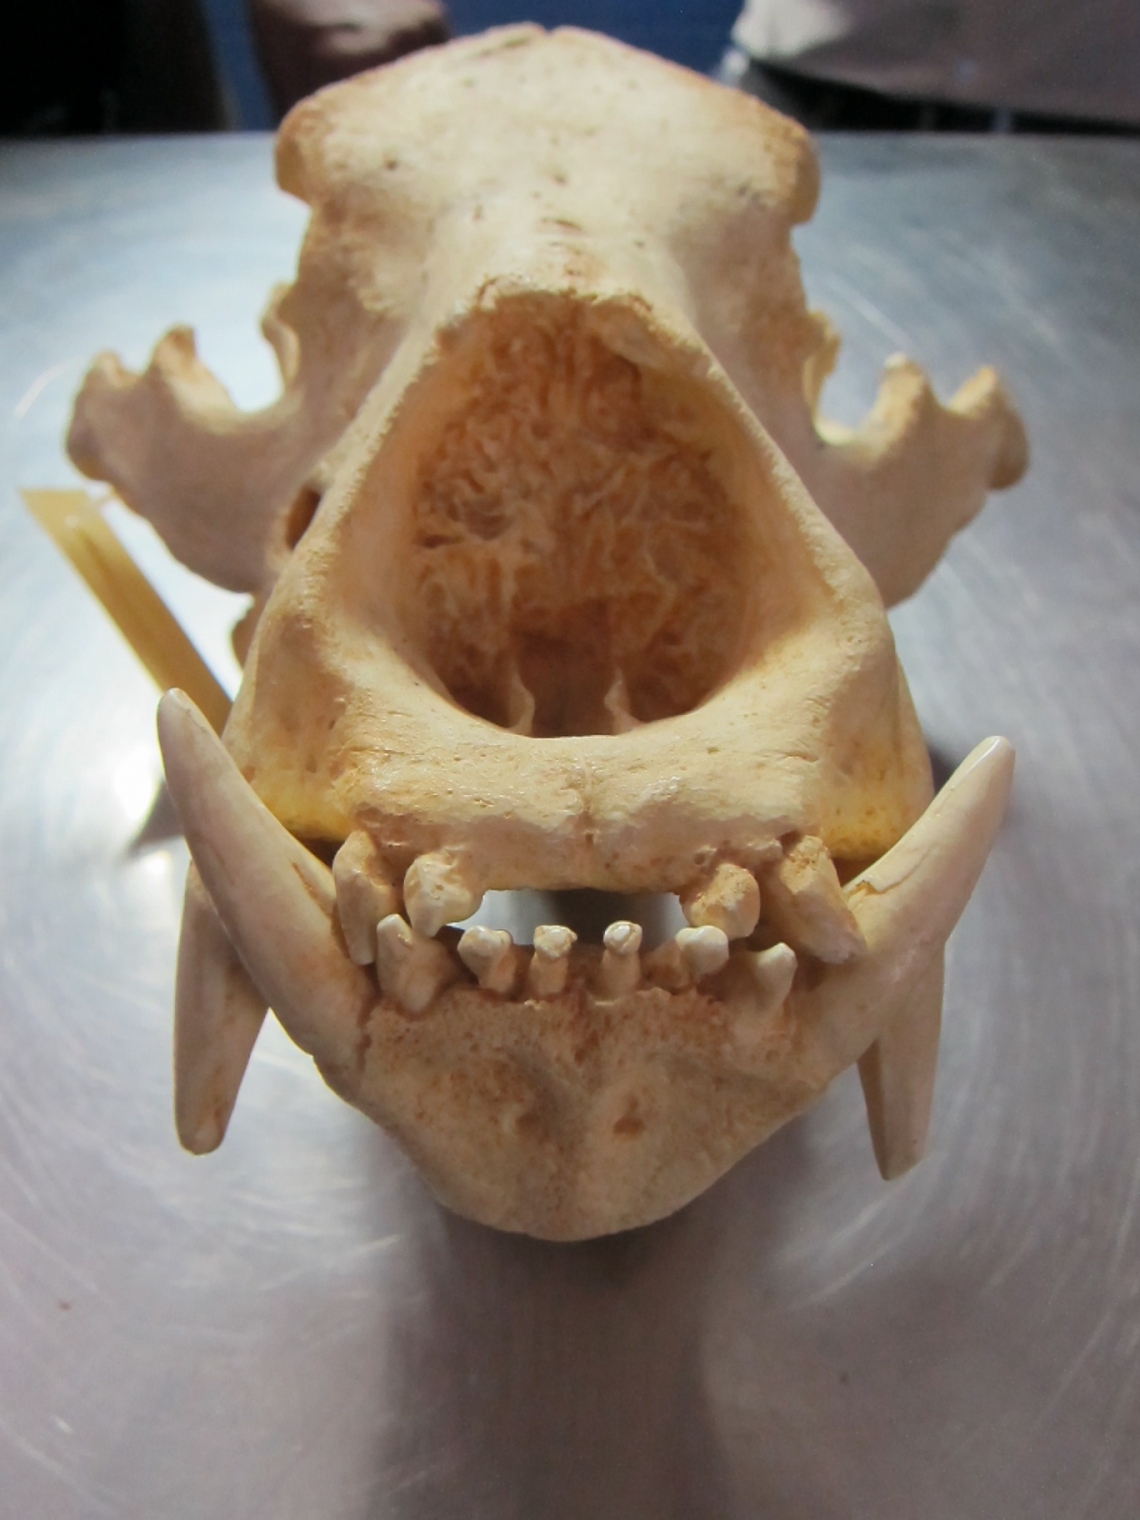 Sloth bear_M ursinus_skull showing missing two upper incisors_D Garshelis